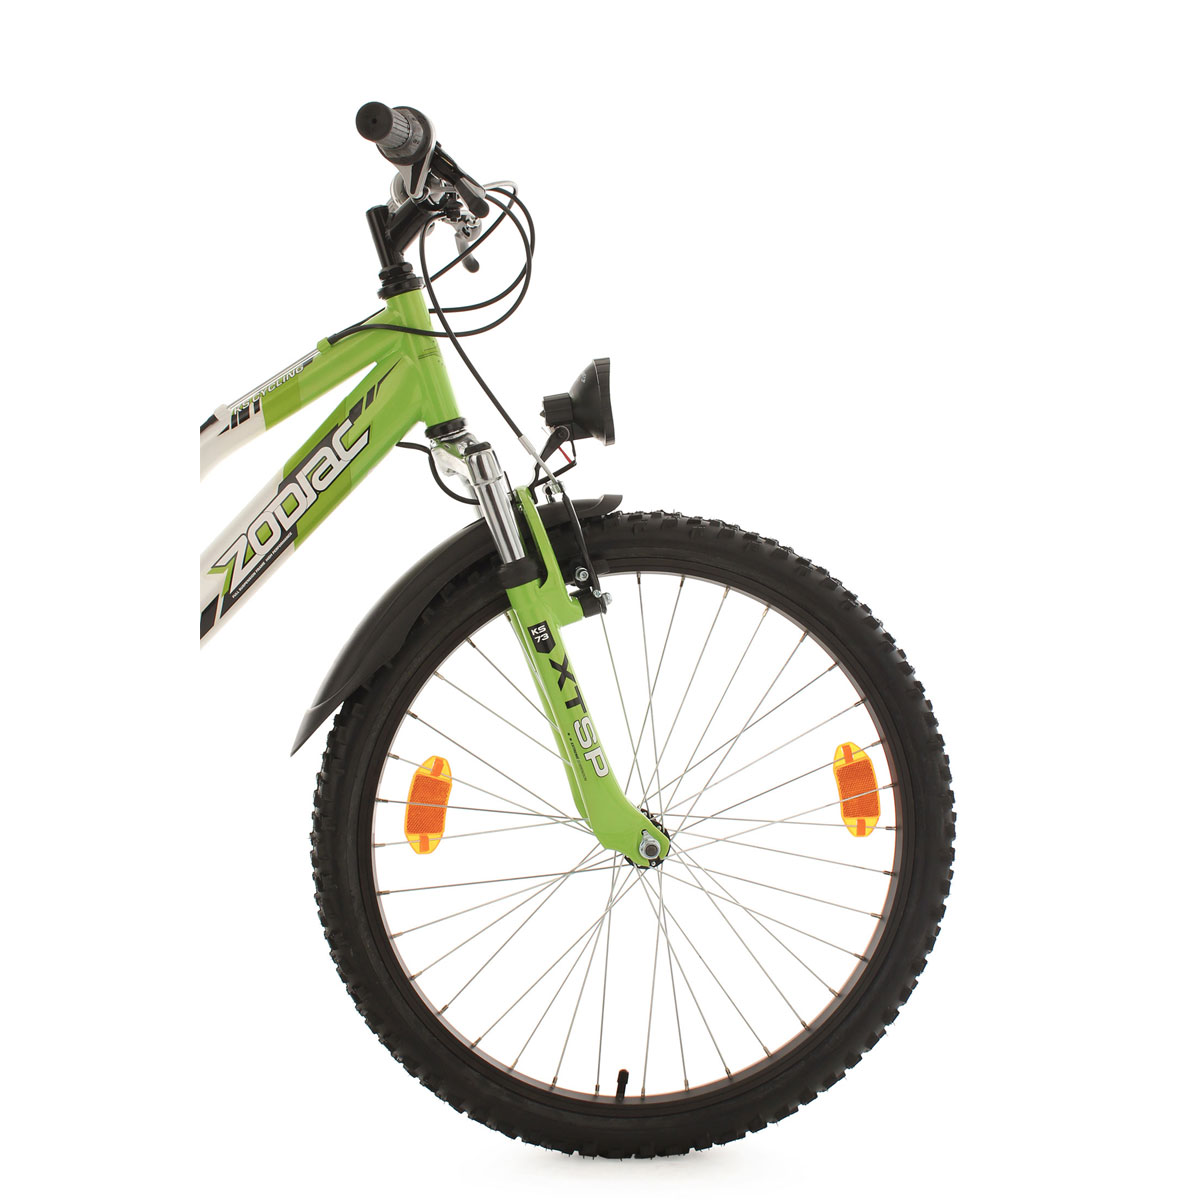 Jugend-Mountainbike „Zodiac“, Fully, 24 Zoll, weiß-grün